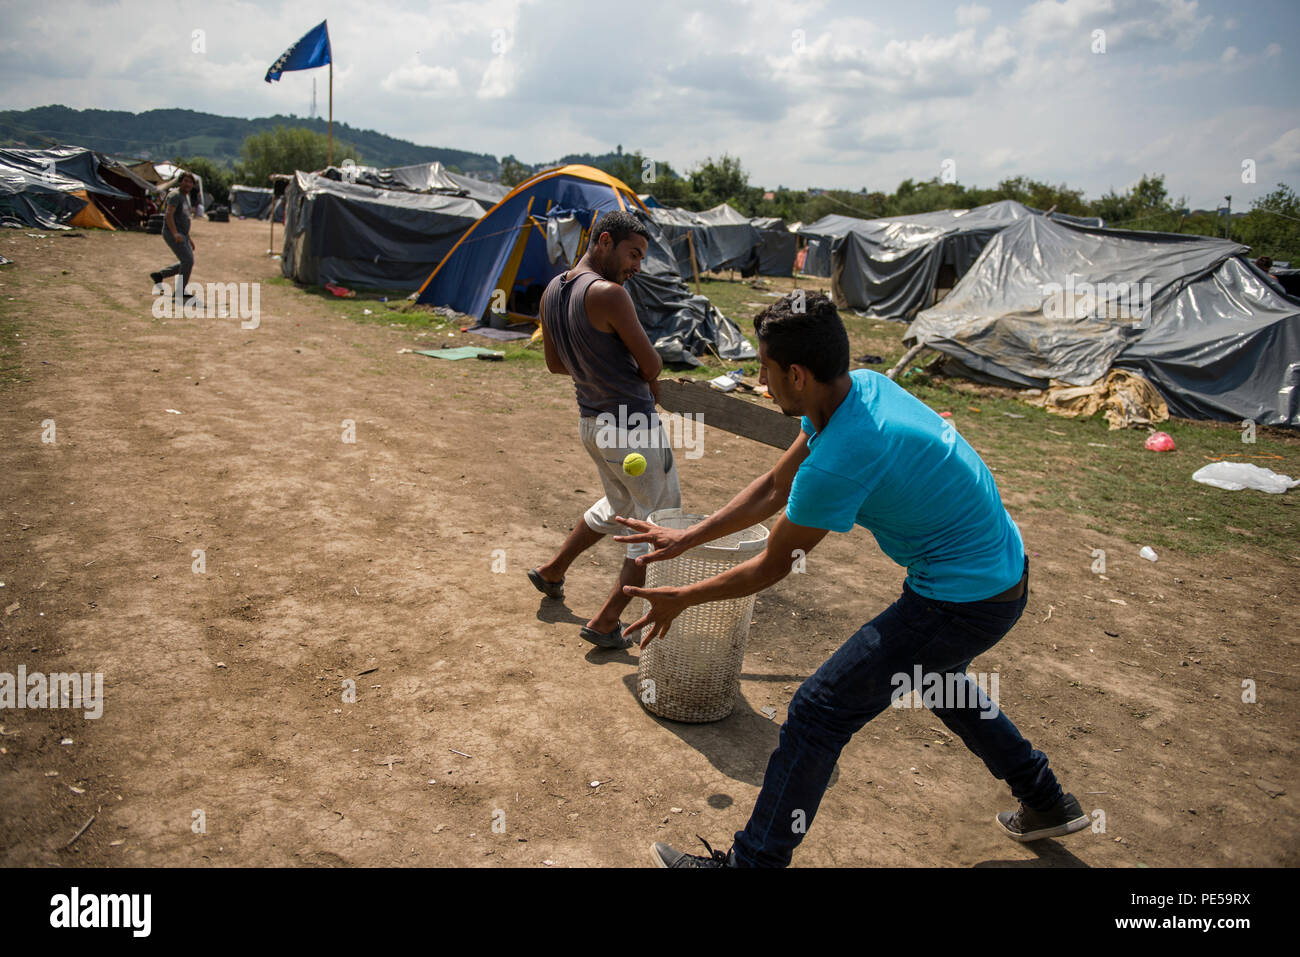 Refugiados pakistaníes visto jugar cricket en el campamento. Los refugiados  que trataban de entrar en la UE a través de Bosnia vive aquí en Velika  Kladusa en terribles condiciones inhumanas y en